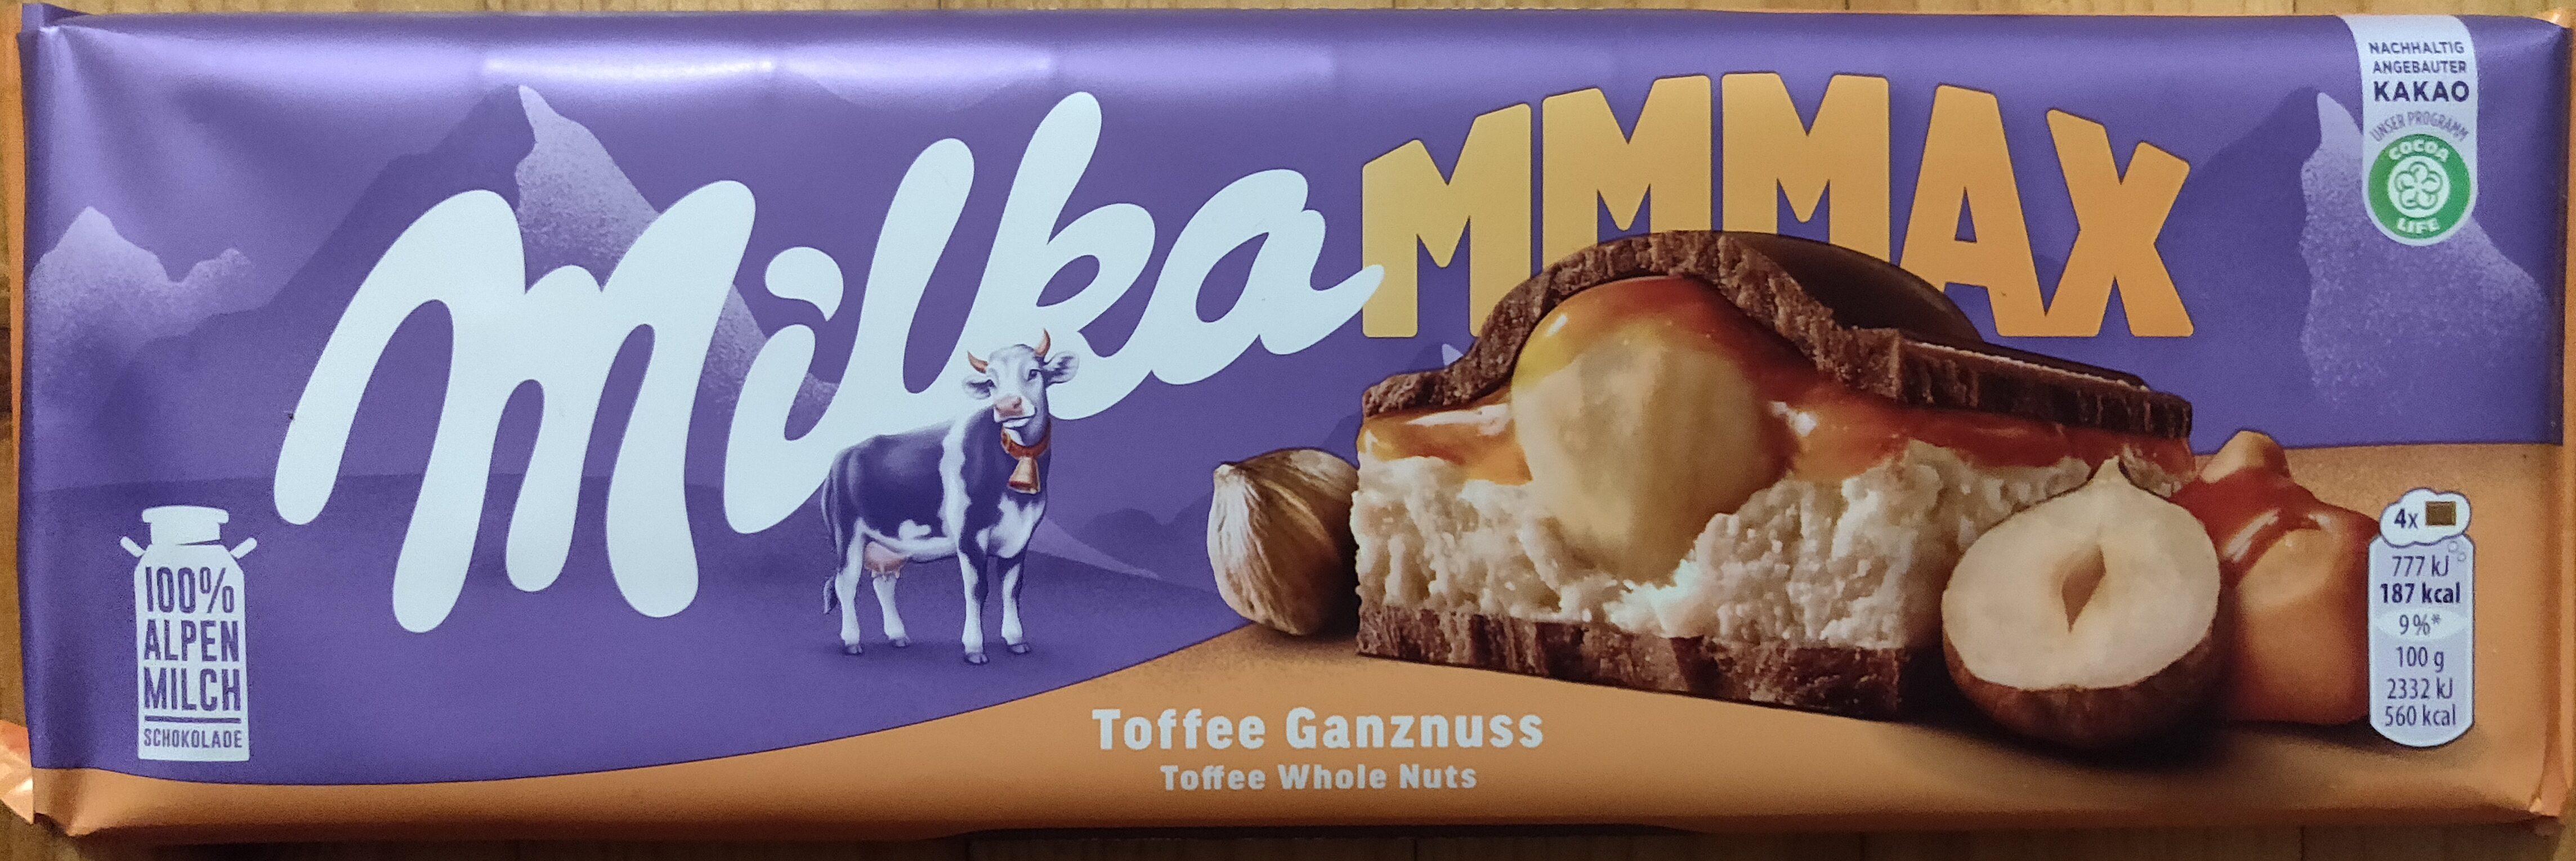 Toffee Ganznuss - Produkt